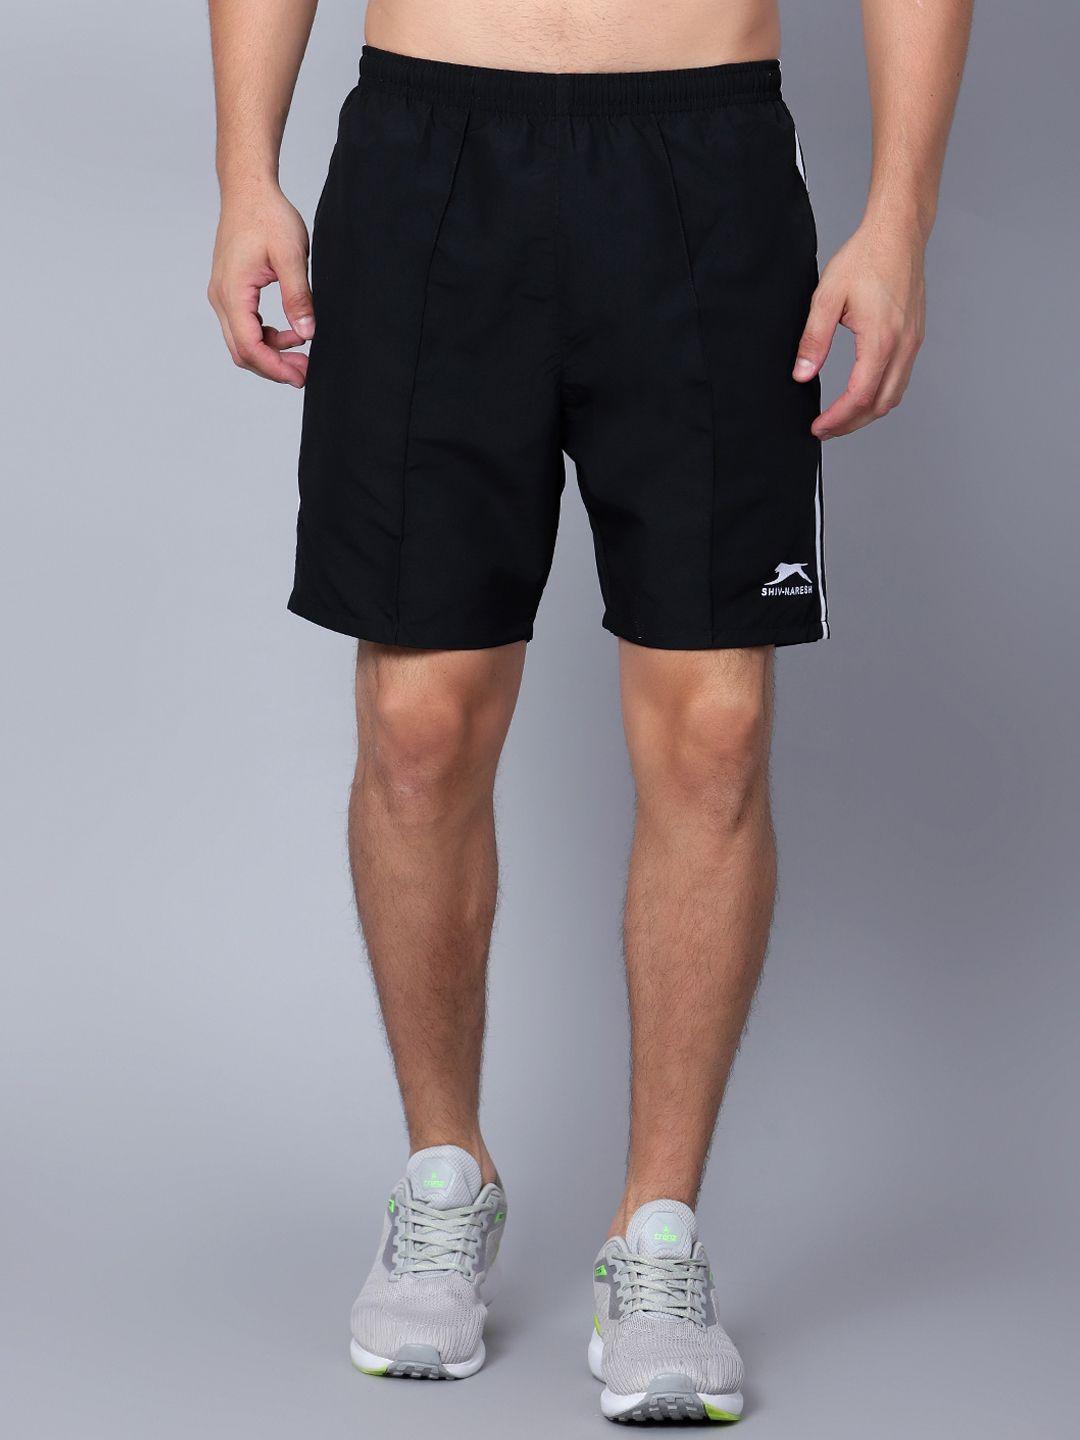 shiv naresh men black running sports shorts